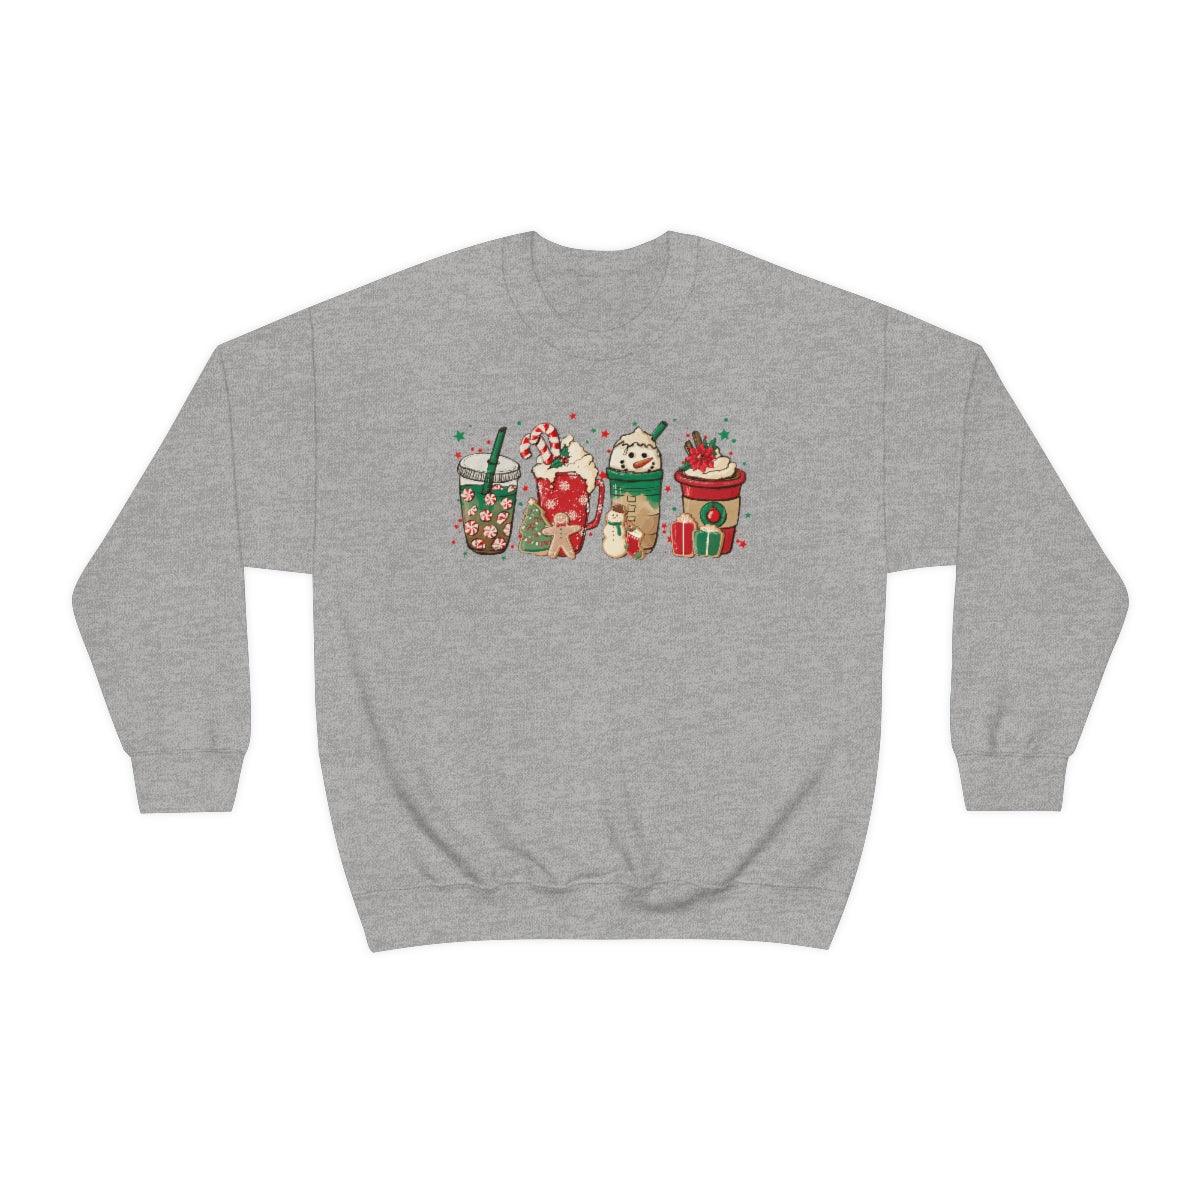 Christmas Coffee Holiday Drinks Christmas Crewneck Sweatshirt - Crystal Rose Design Co.